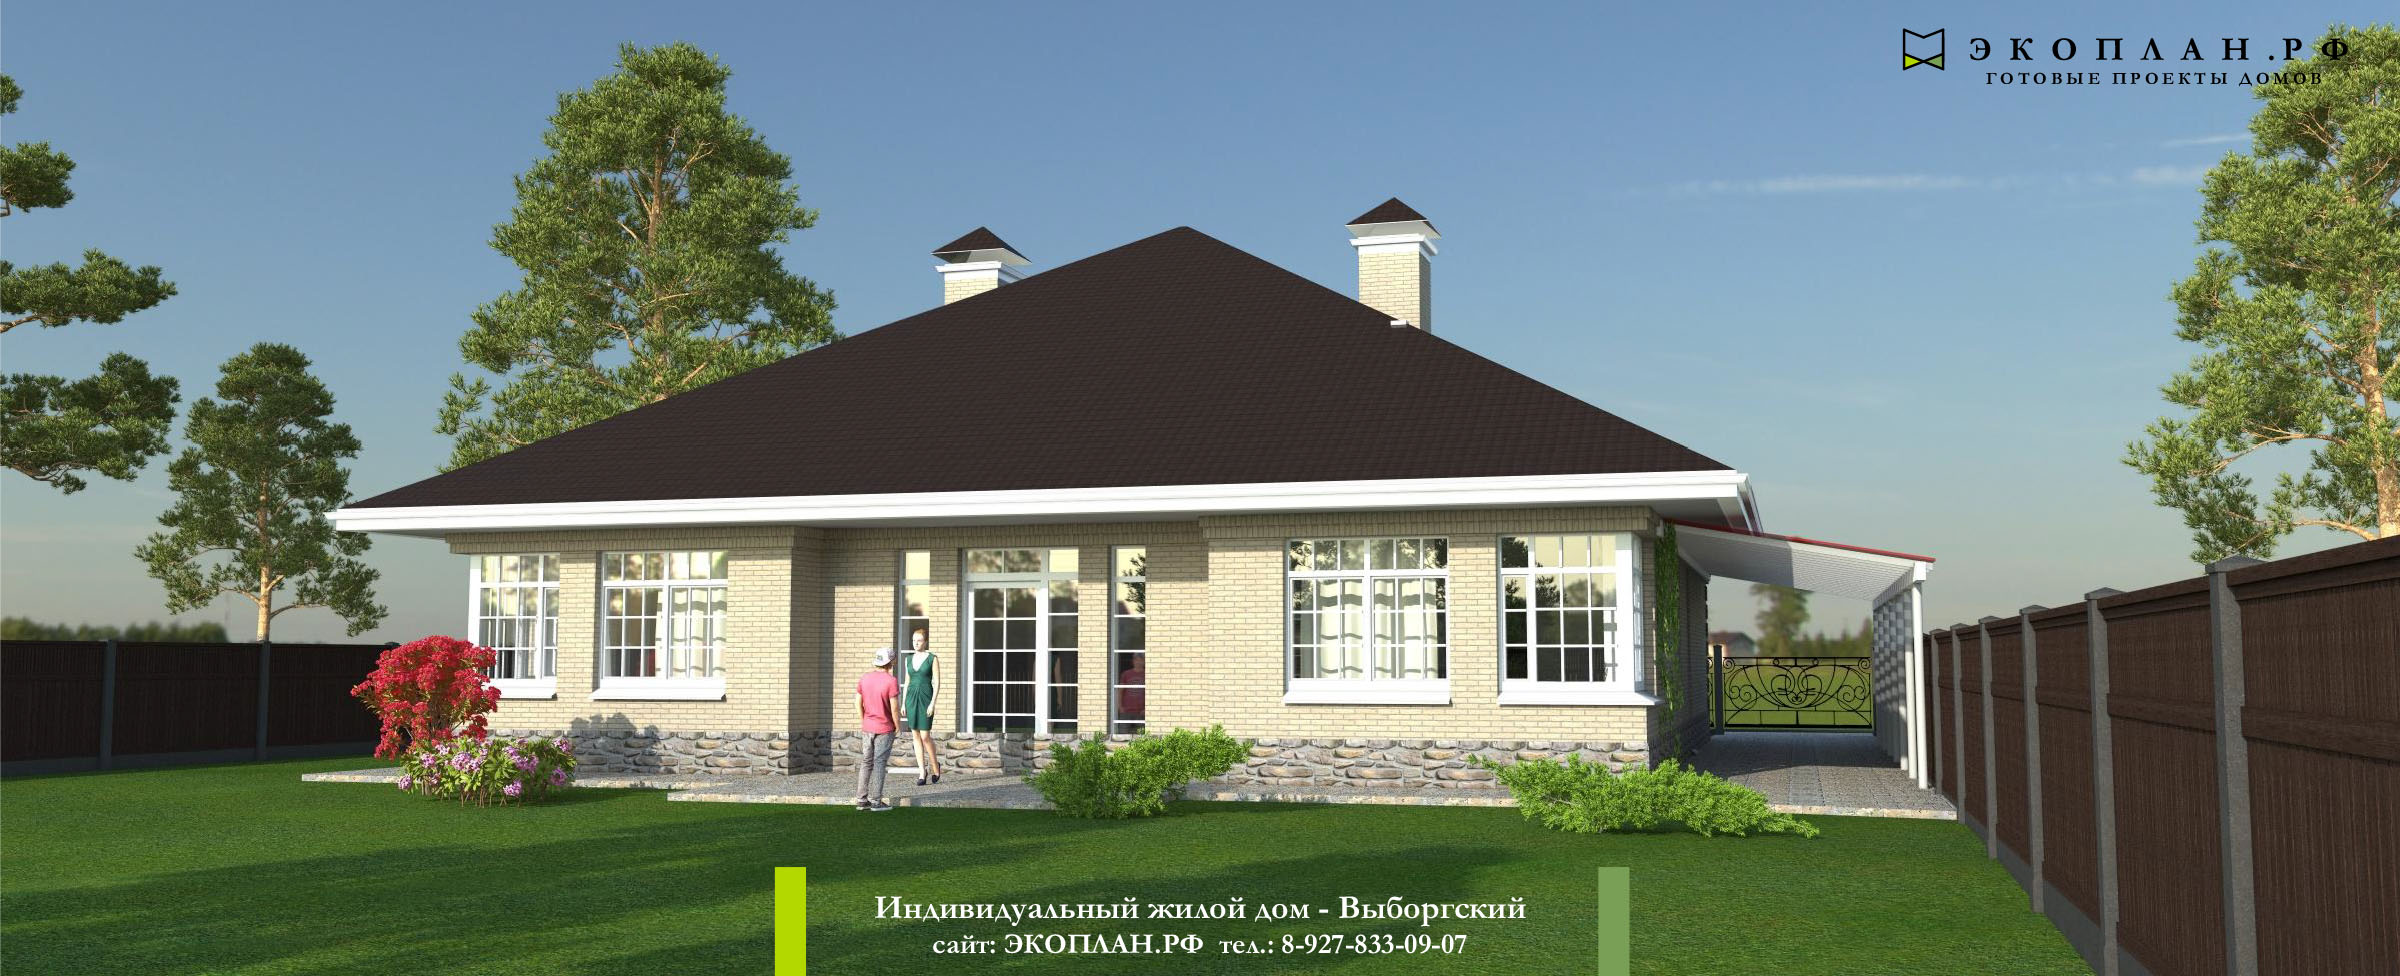 Готовый проект дома -Выборгский - Экоплан.рф фасад